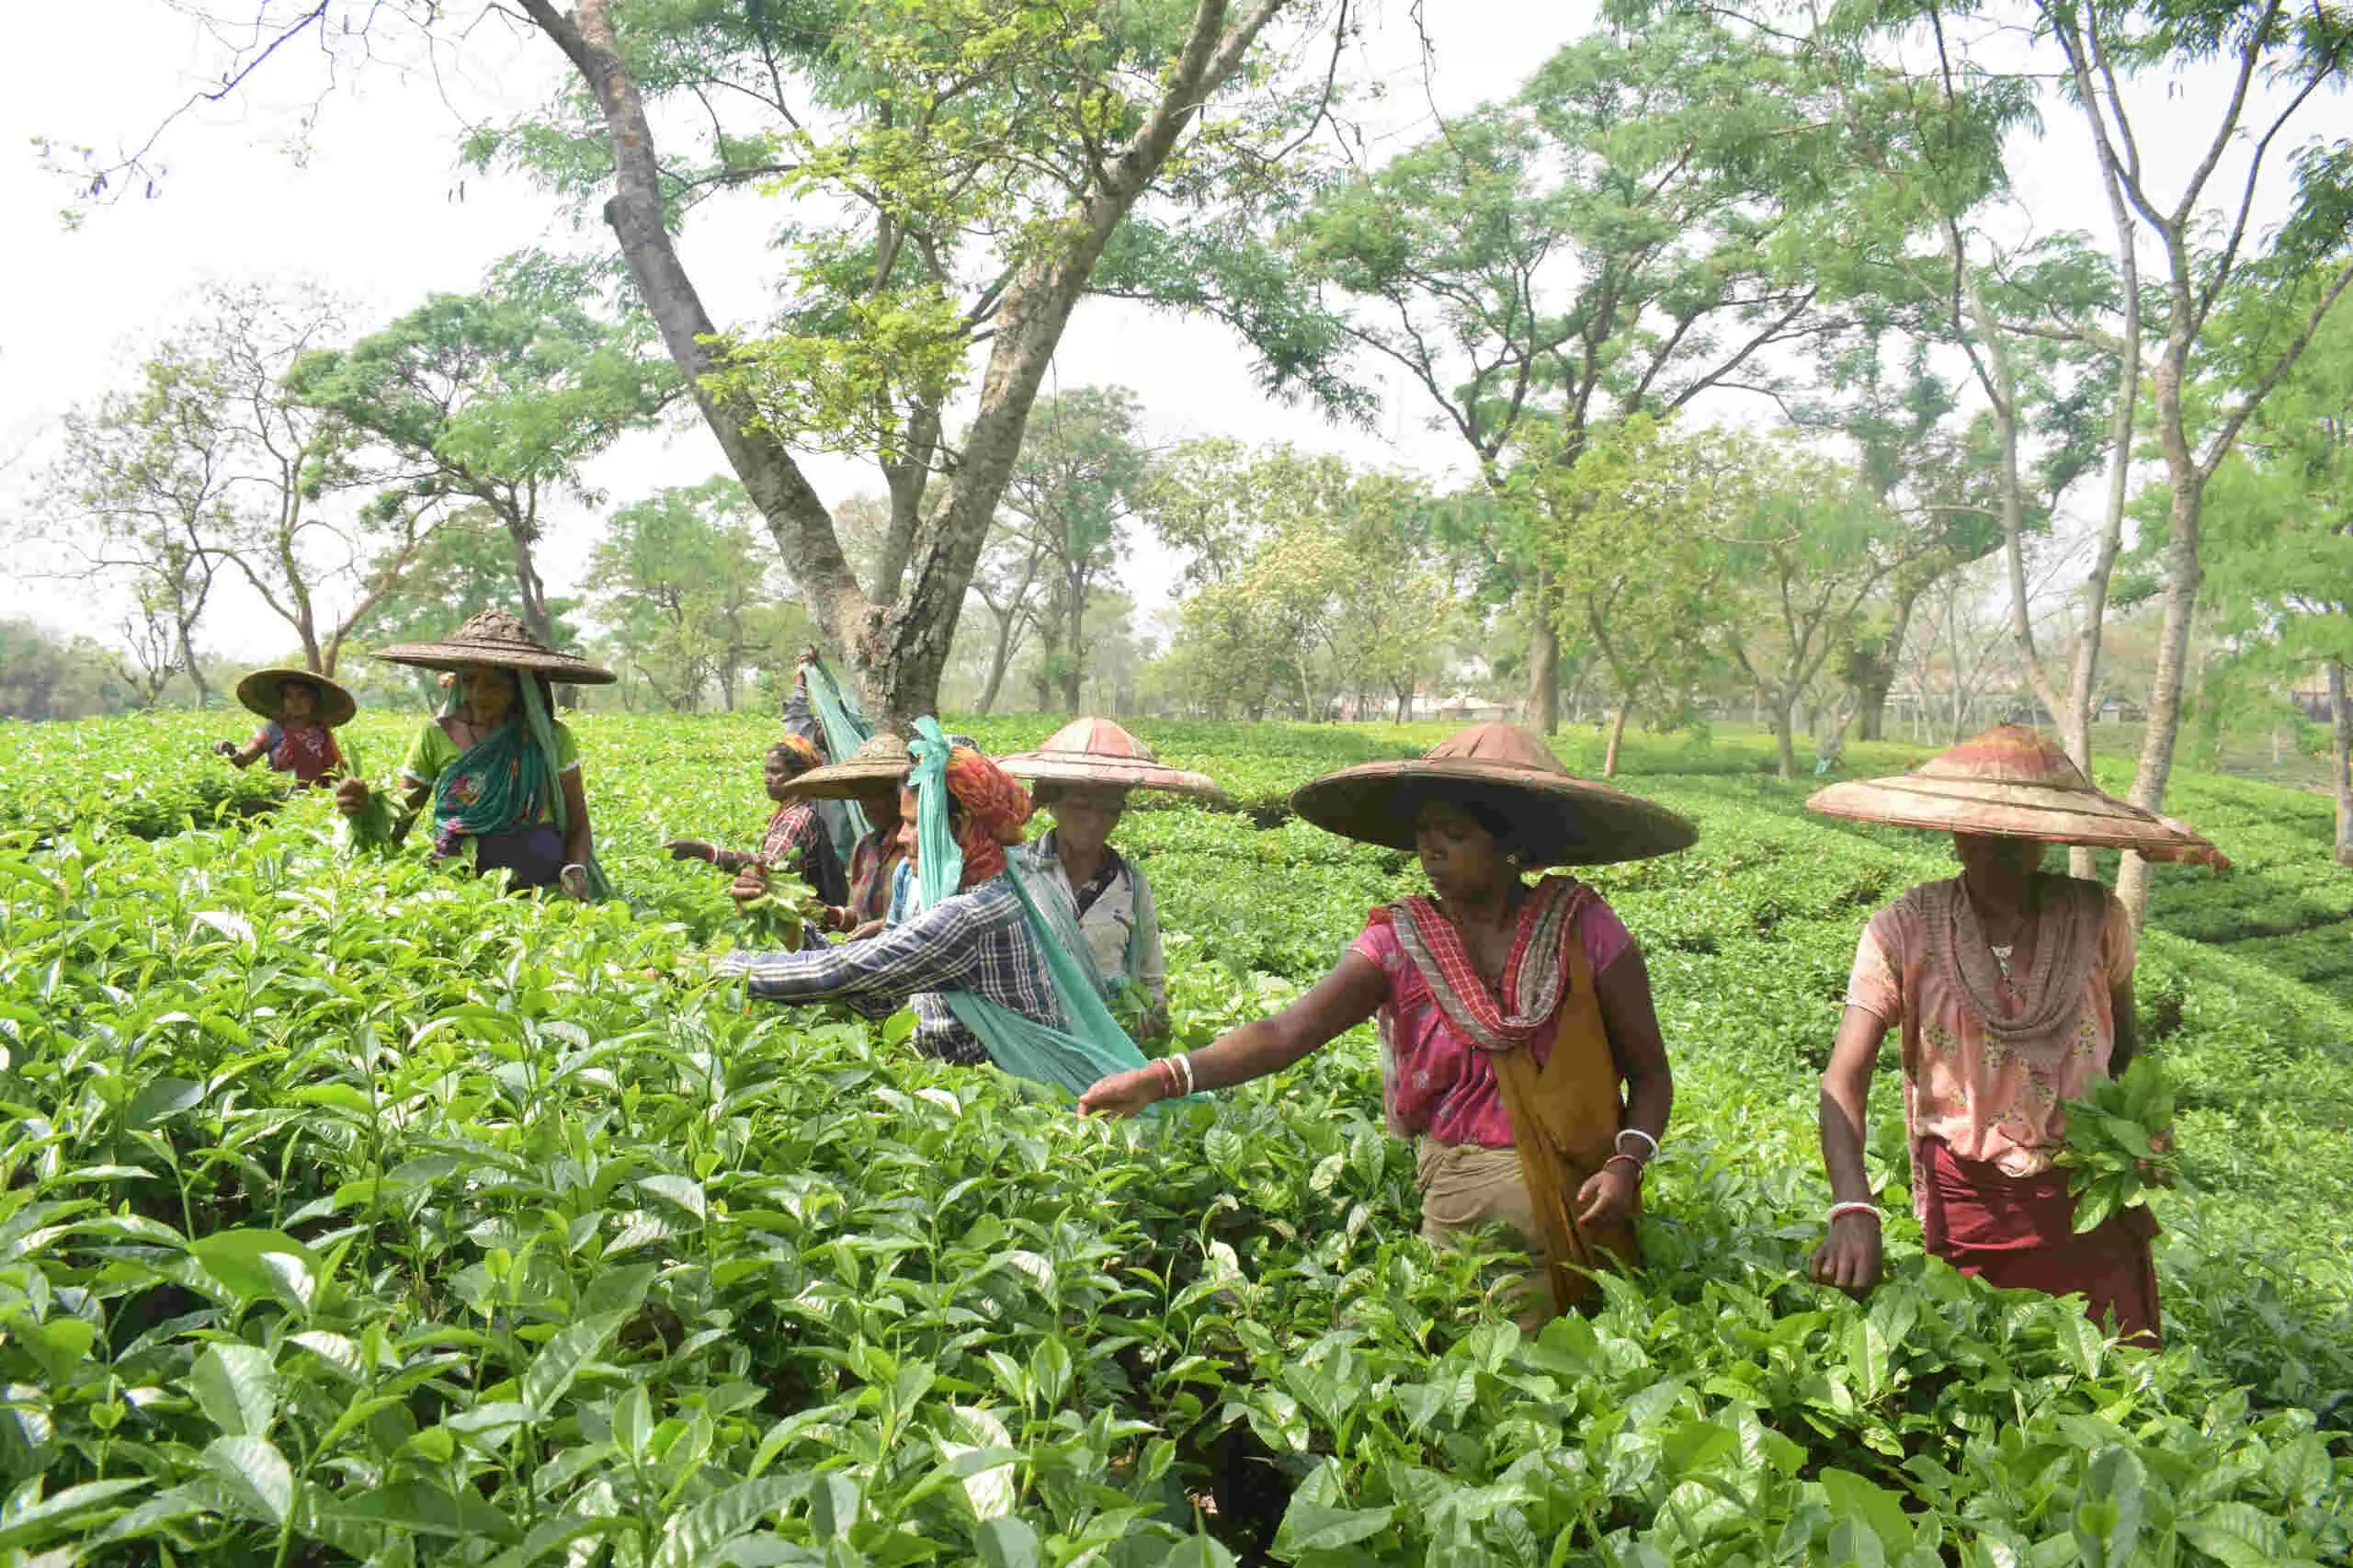 चाय नीलामी केंद्र की स्थापना के साथ त्रिपुरा में चाय उद्योग एक बड़े बदलाव के लिए तैयार